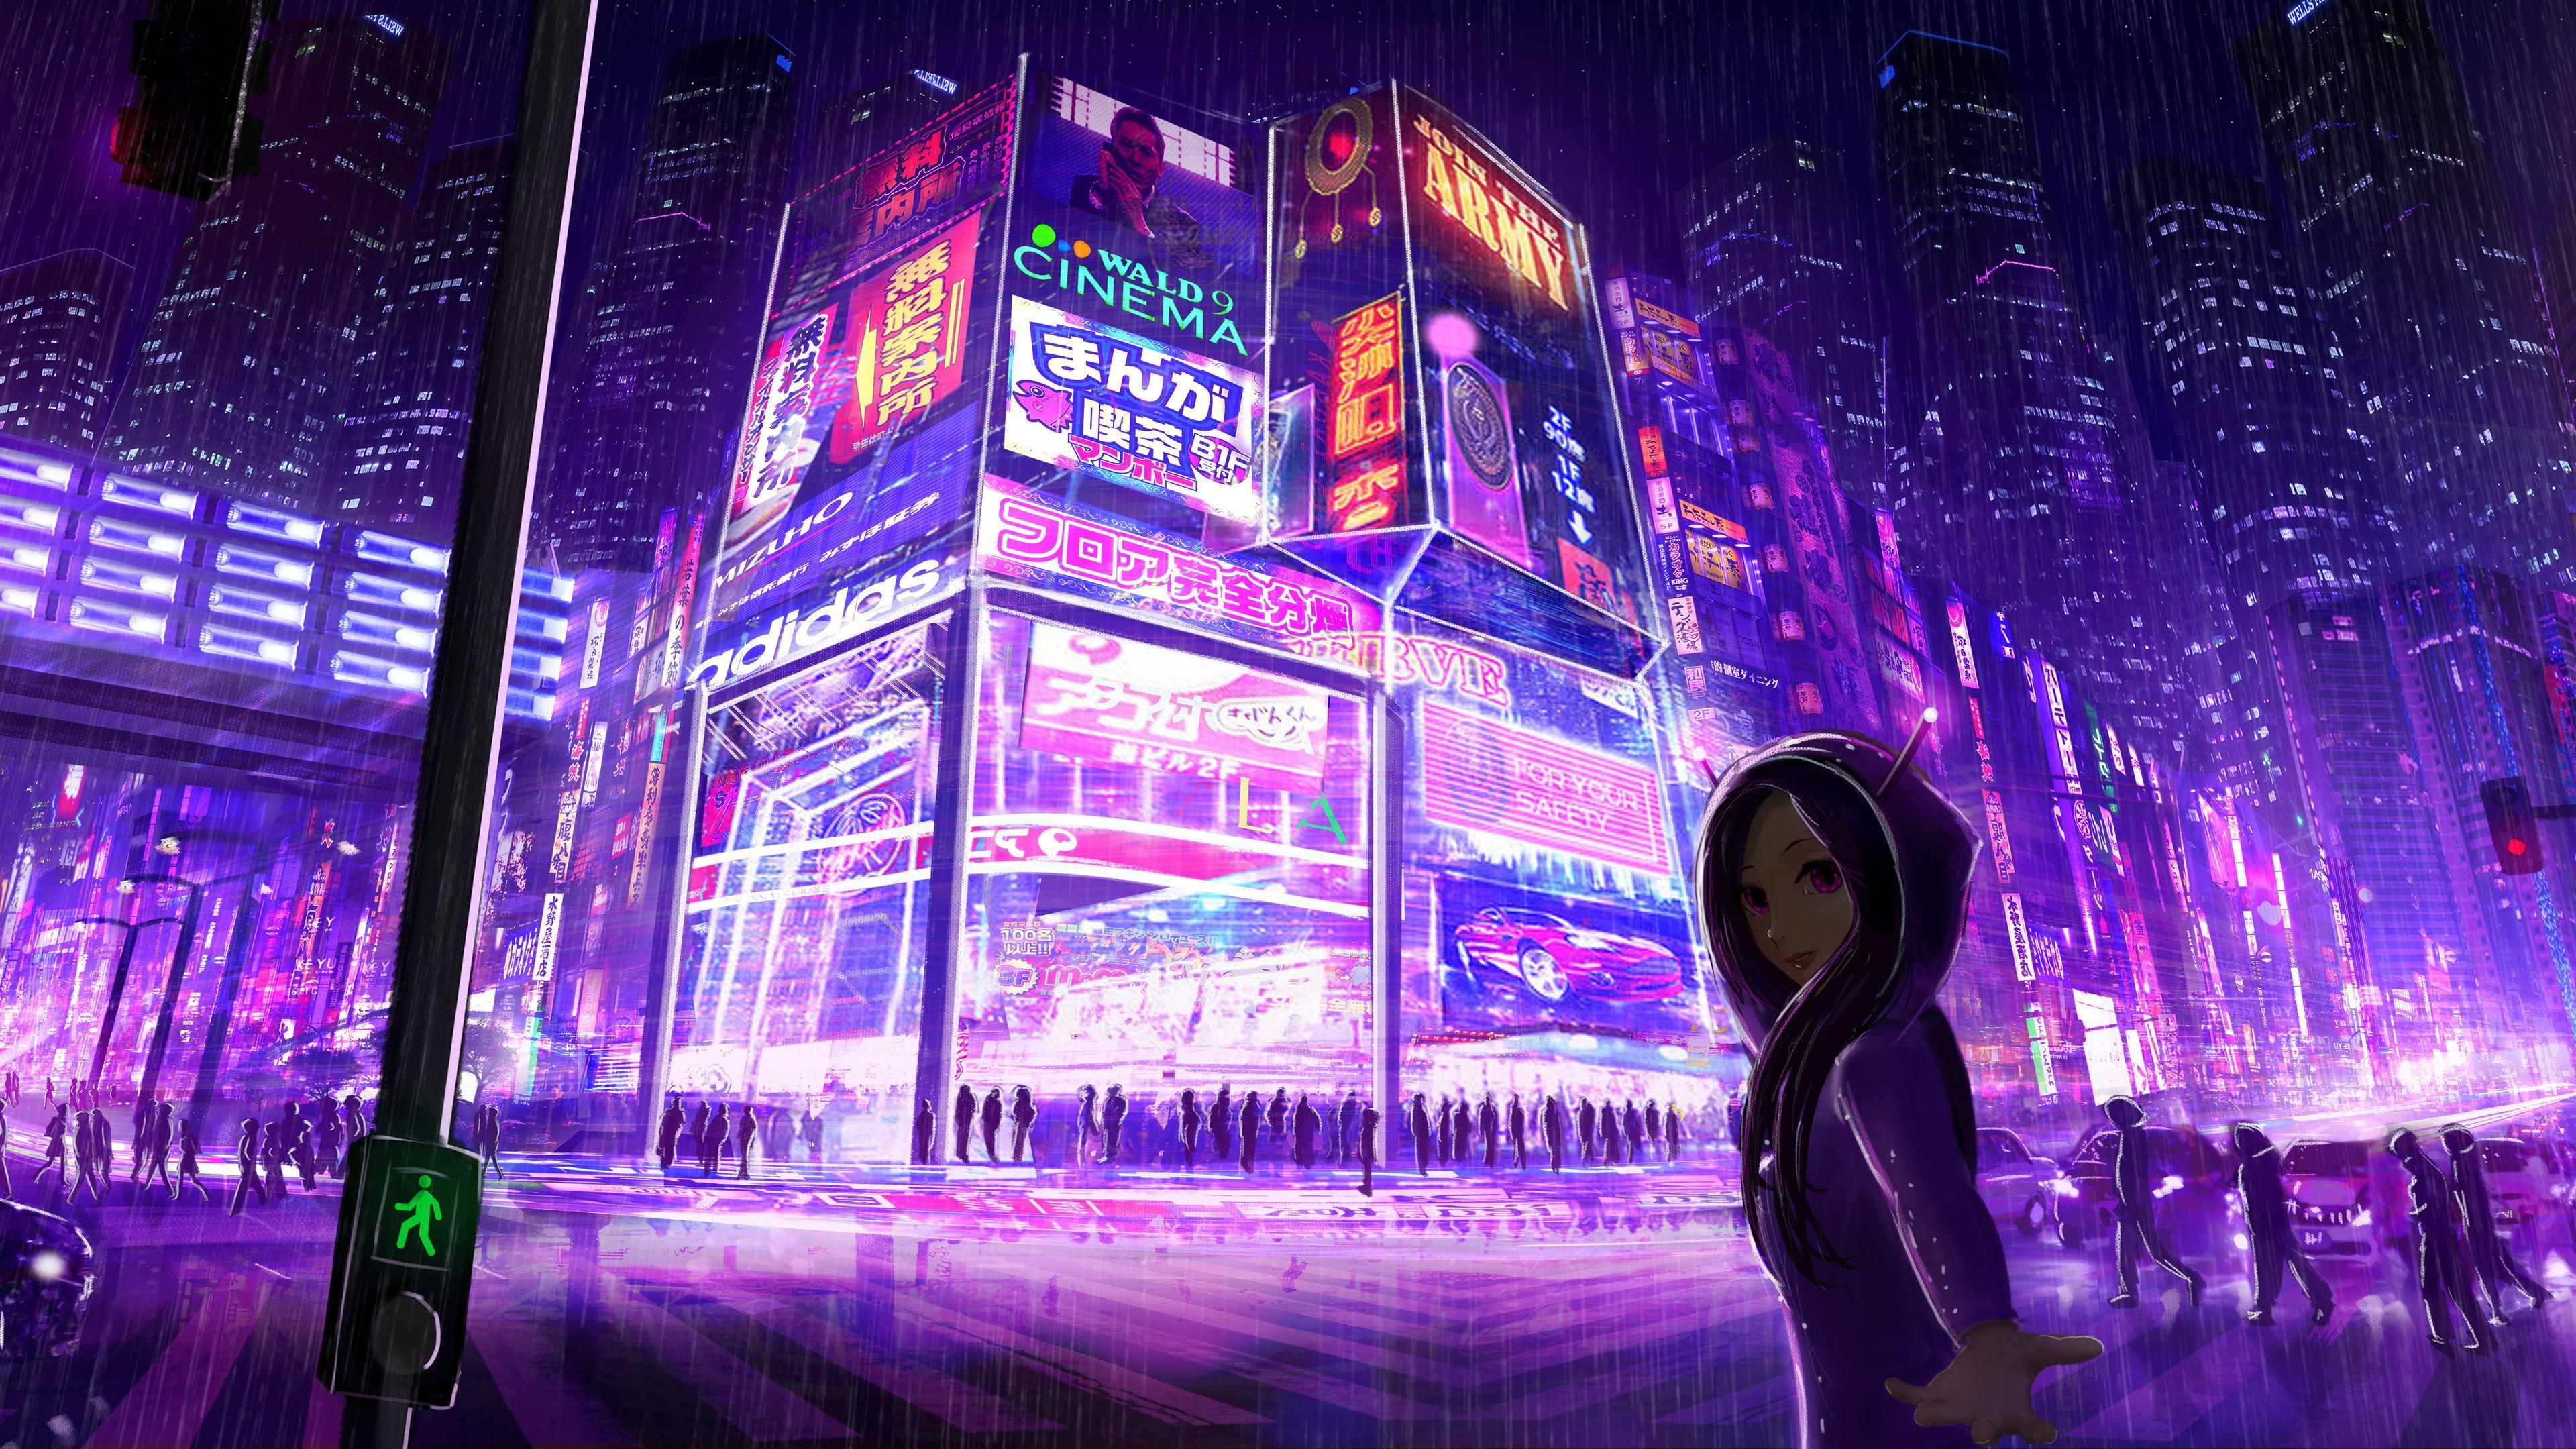 Cyberpunk: Edgerunners, cyberpunk, anime girls, Lucyna Kushinada (Cyberpunk:  Edgerunners), Moon, fan art | 1919x1095 Wallpaper - wallhaven.cc